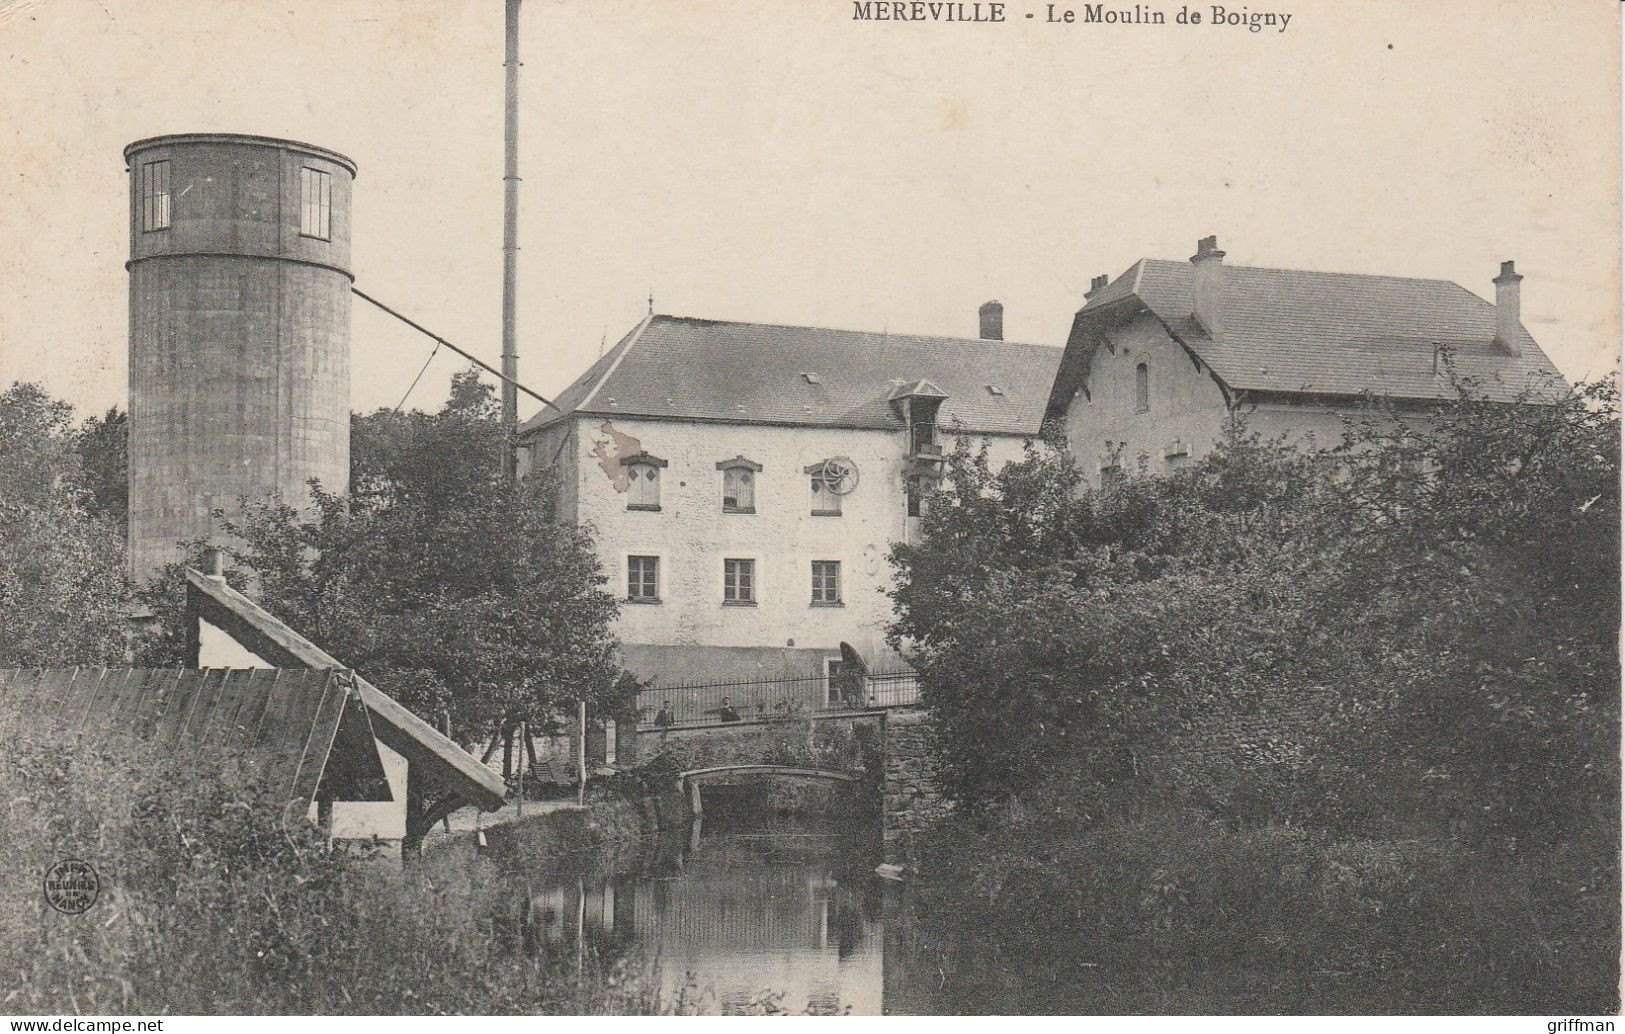 MEREVILLE LE MOULIN DE BOIGNY 1910 TBE - Mereville